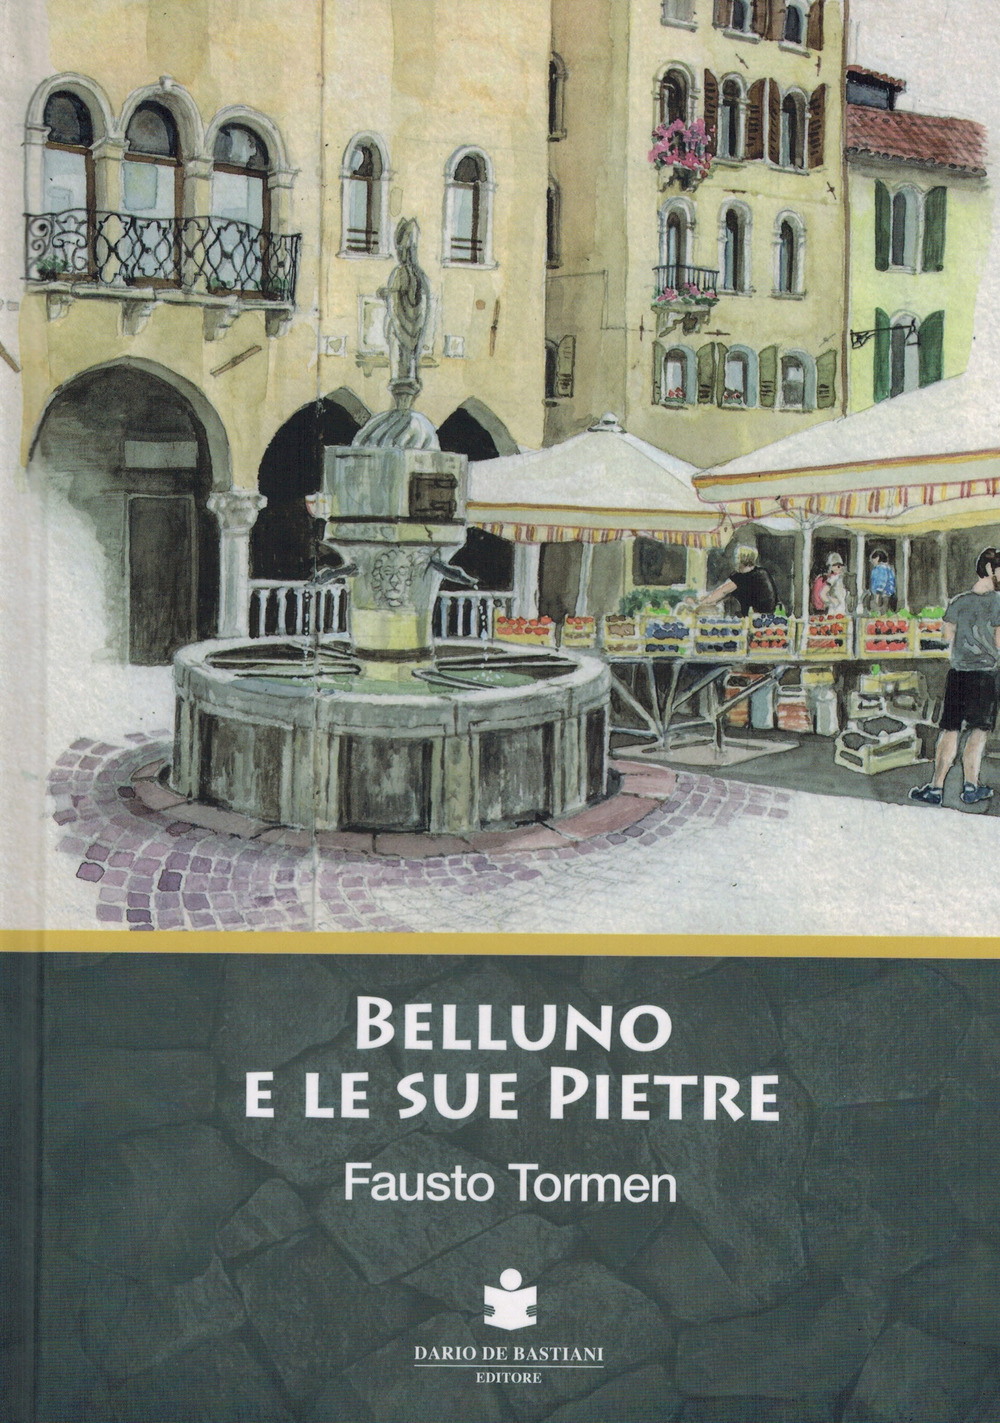 Libri Fausto Tormen - Belluno E Le Sue Pietre NUOVO SIGILLATO, EDIZIONE DEL 13/10/2021 SUBITO DISPONIBILE